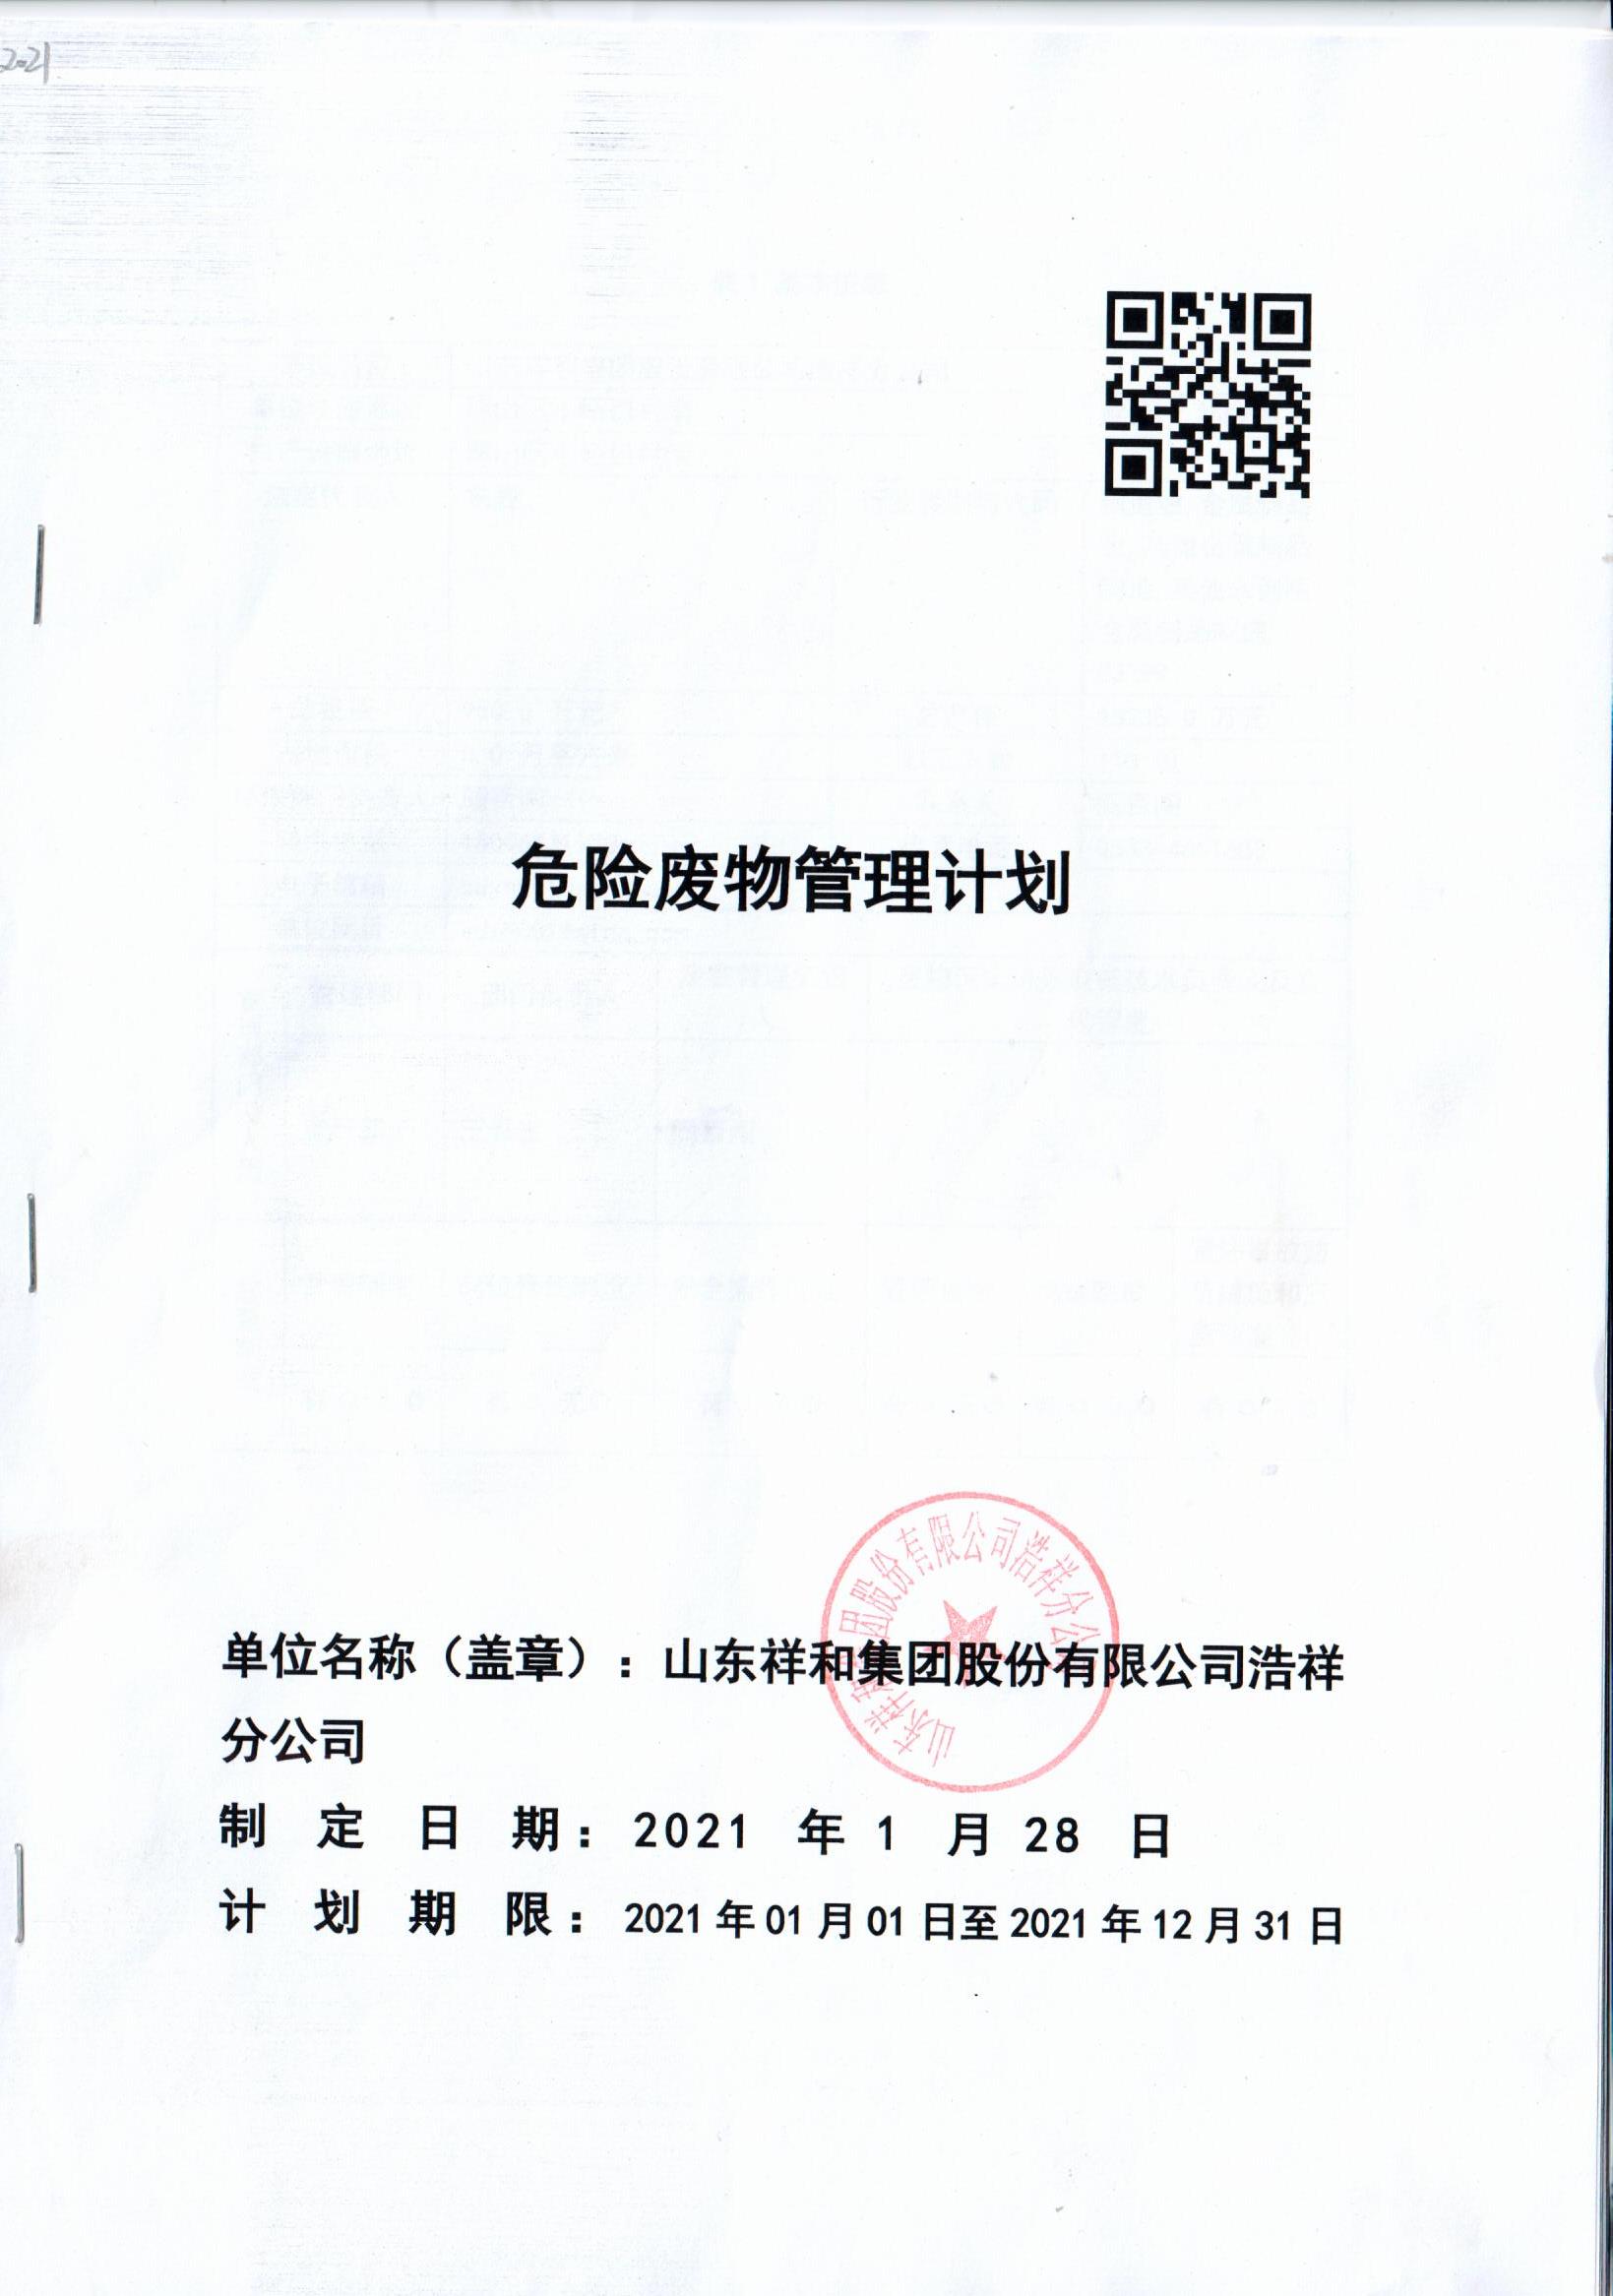 AG大厅游戏官网(中国)AG有限公司集团浩祥分公司2021年度危险废物管理信息公开